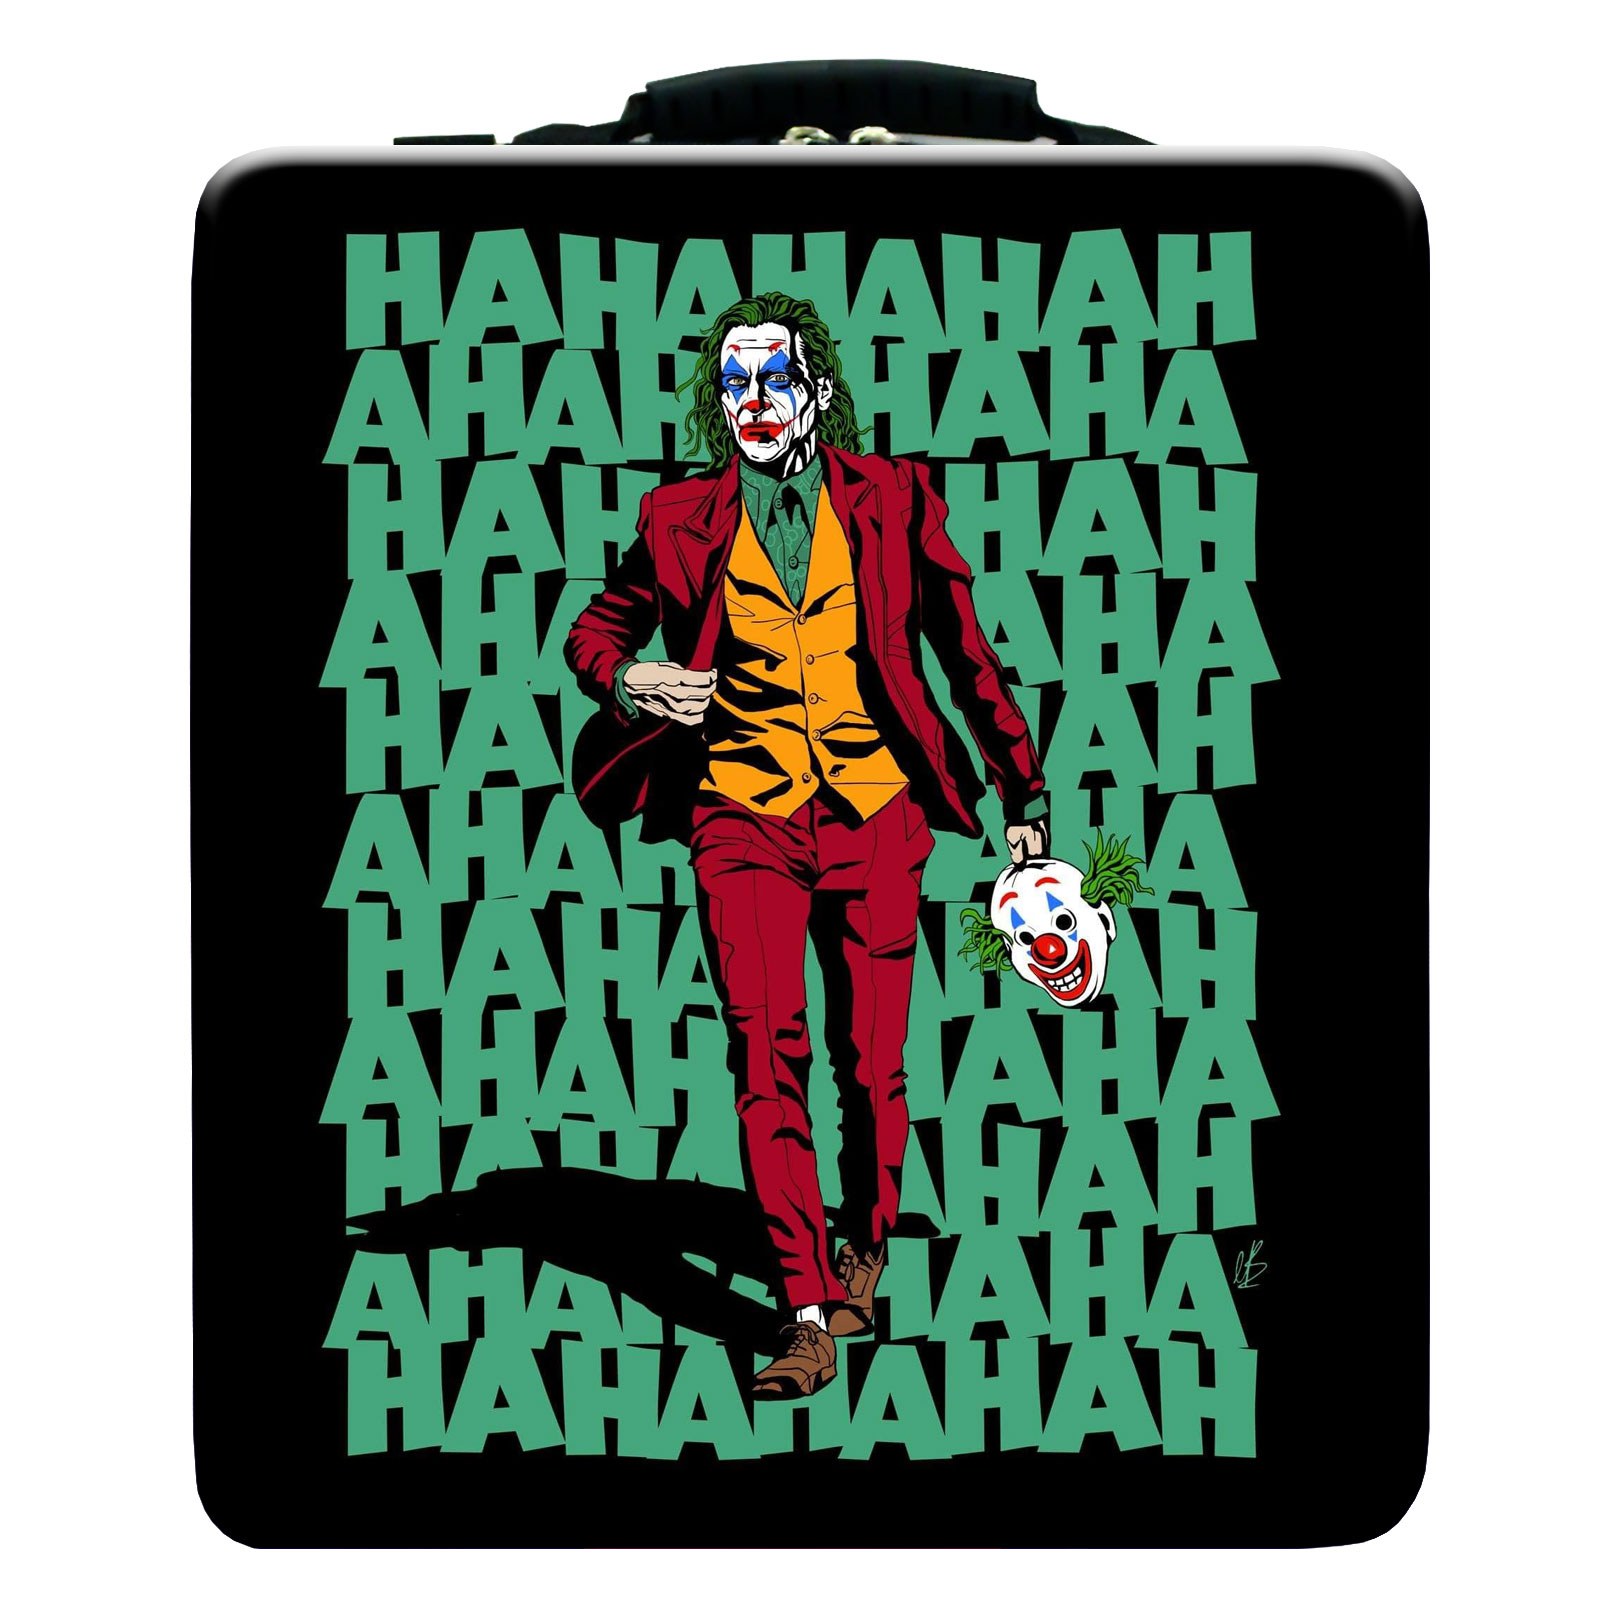 نقد و بررسی کیف حمل کنسول پلی استیشن 4 مدل Joker 2019 توسط خریداران